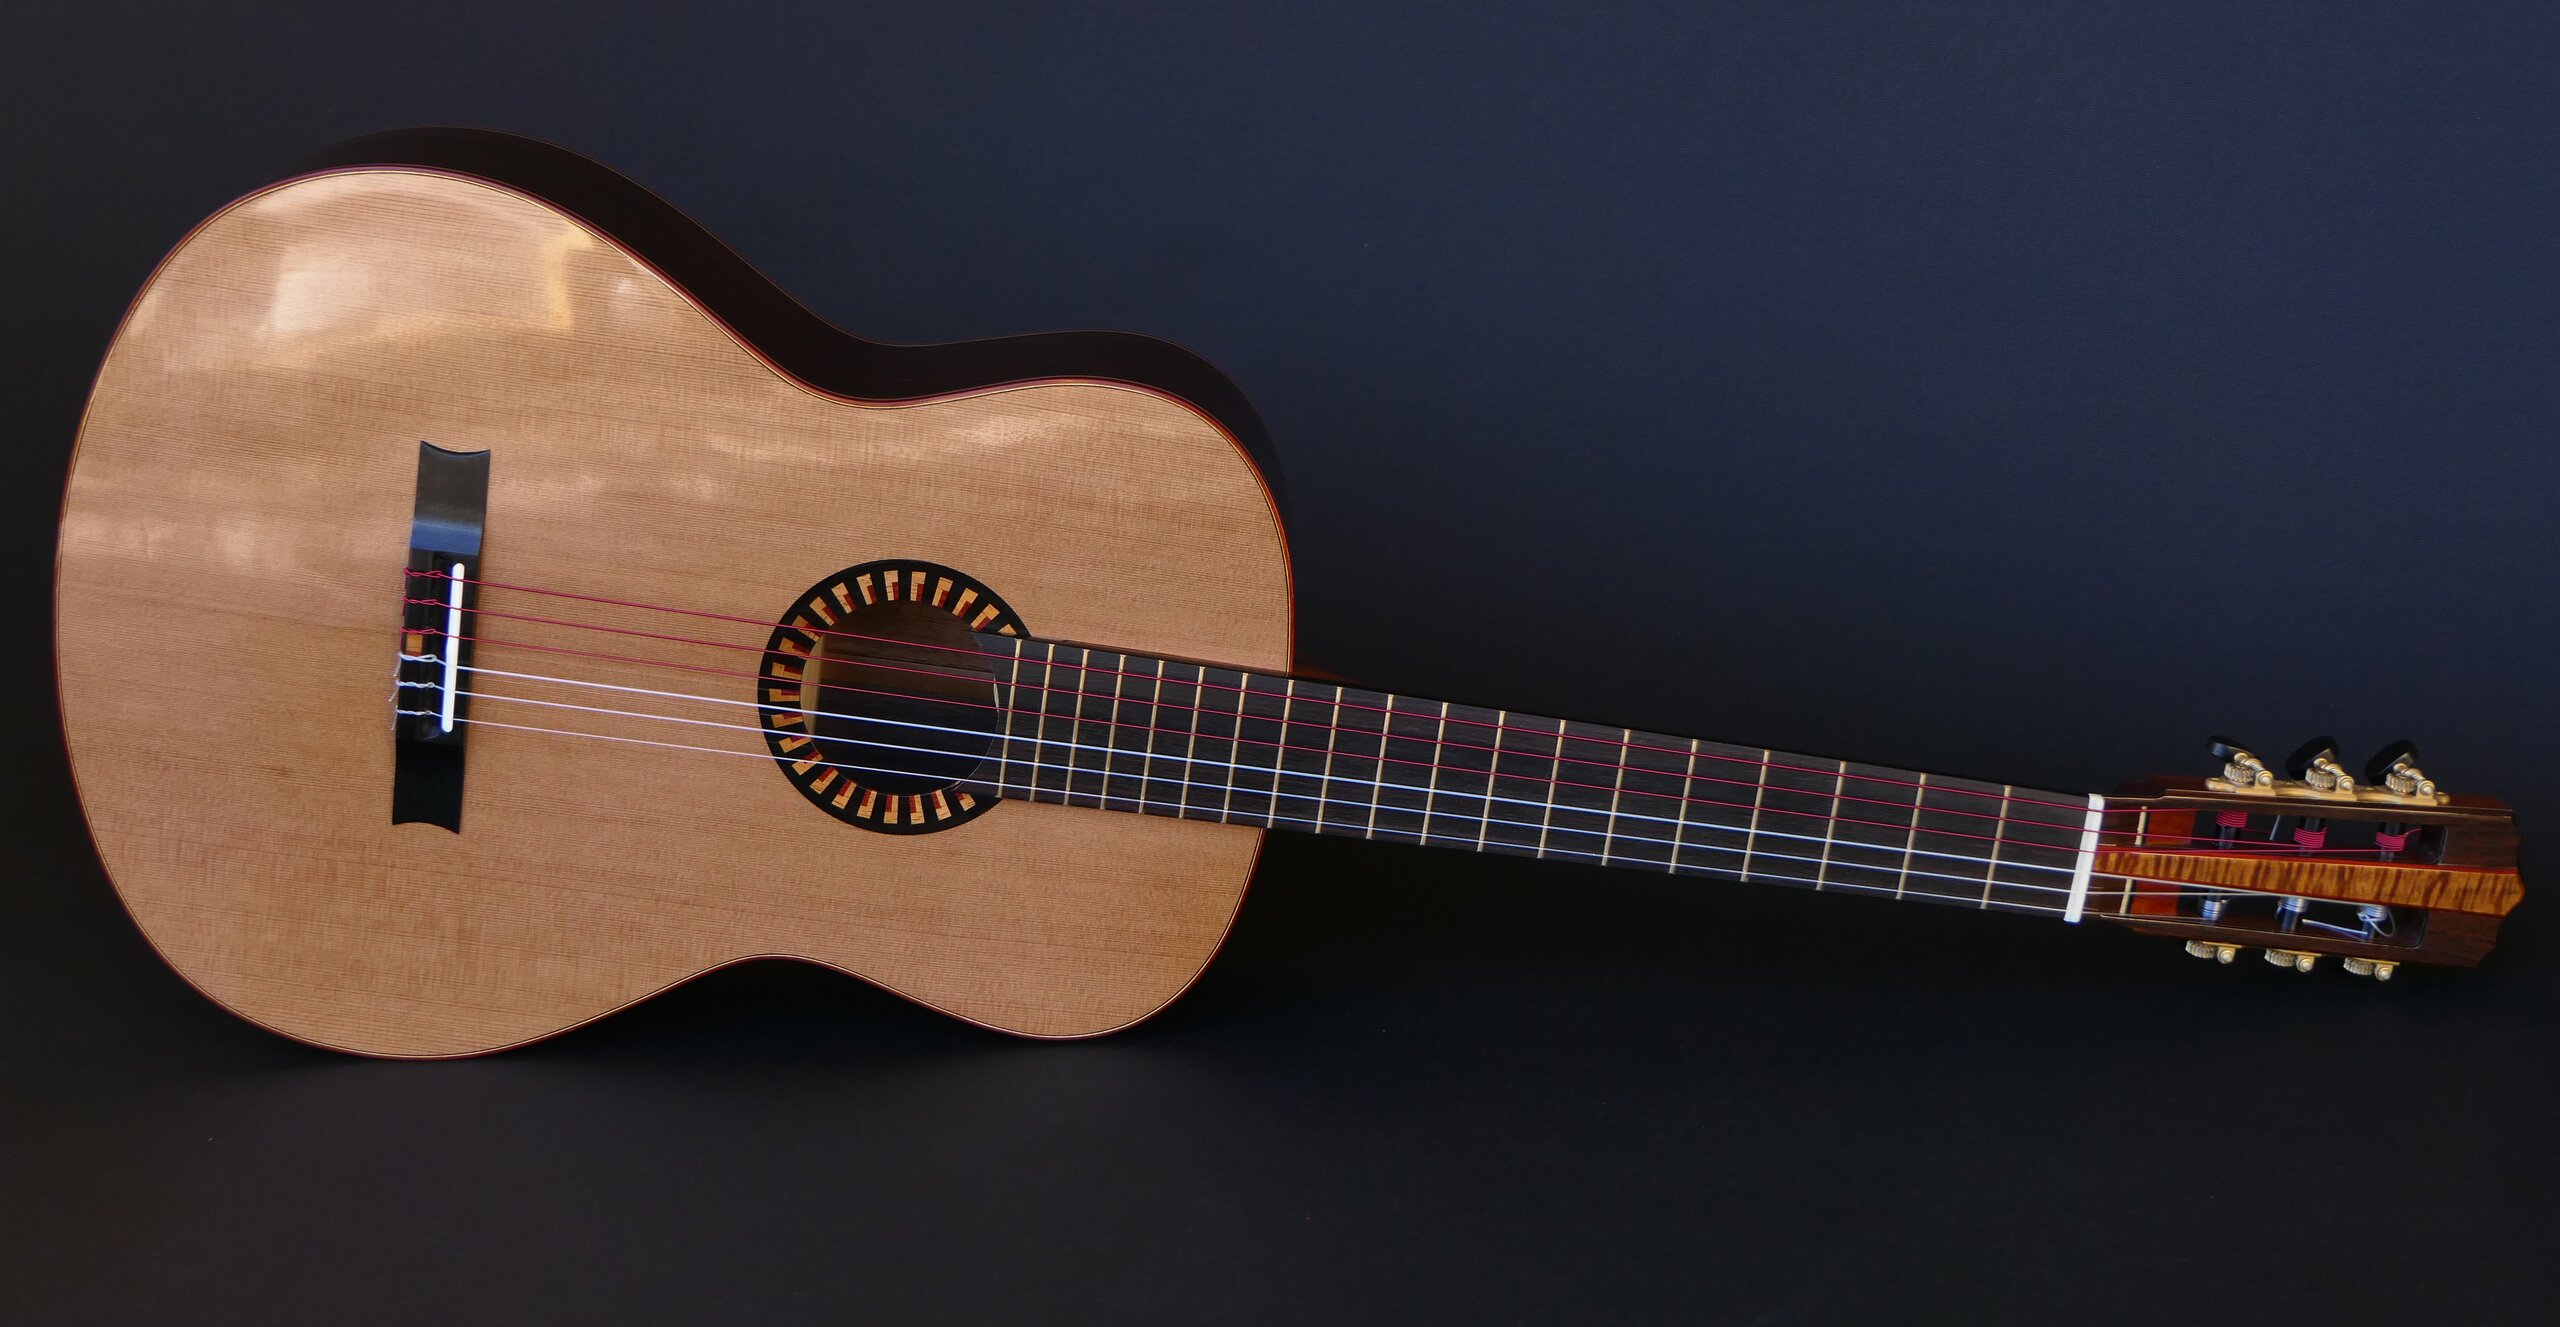 Gore classical guitar with cedar top and art deco trim